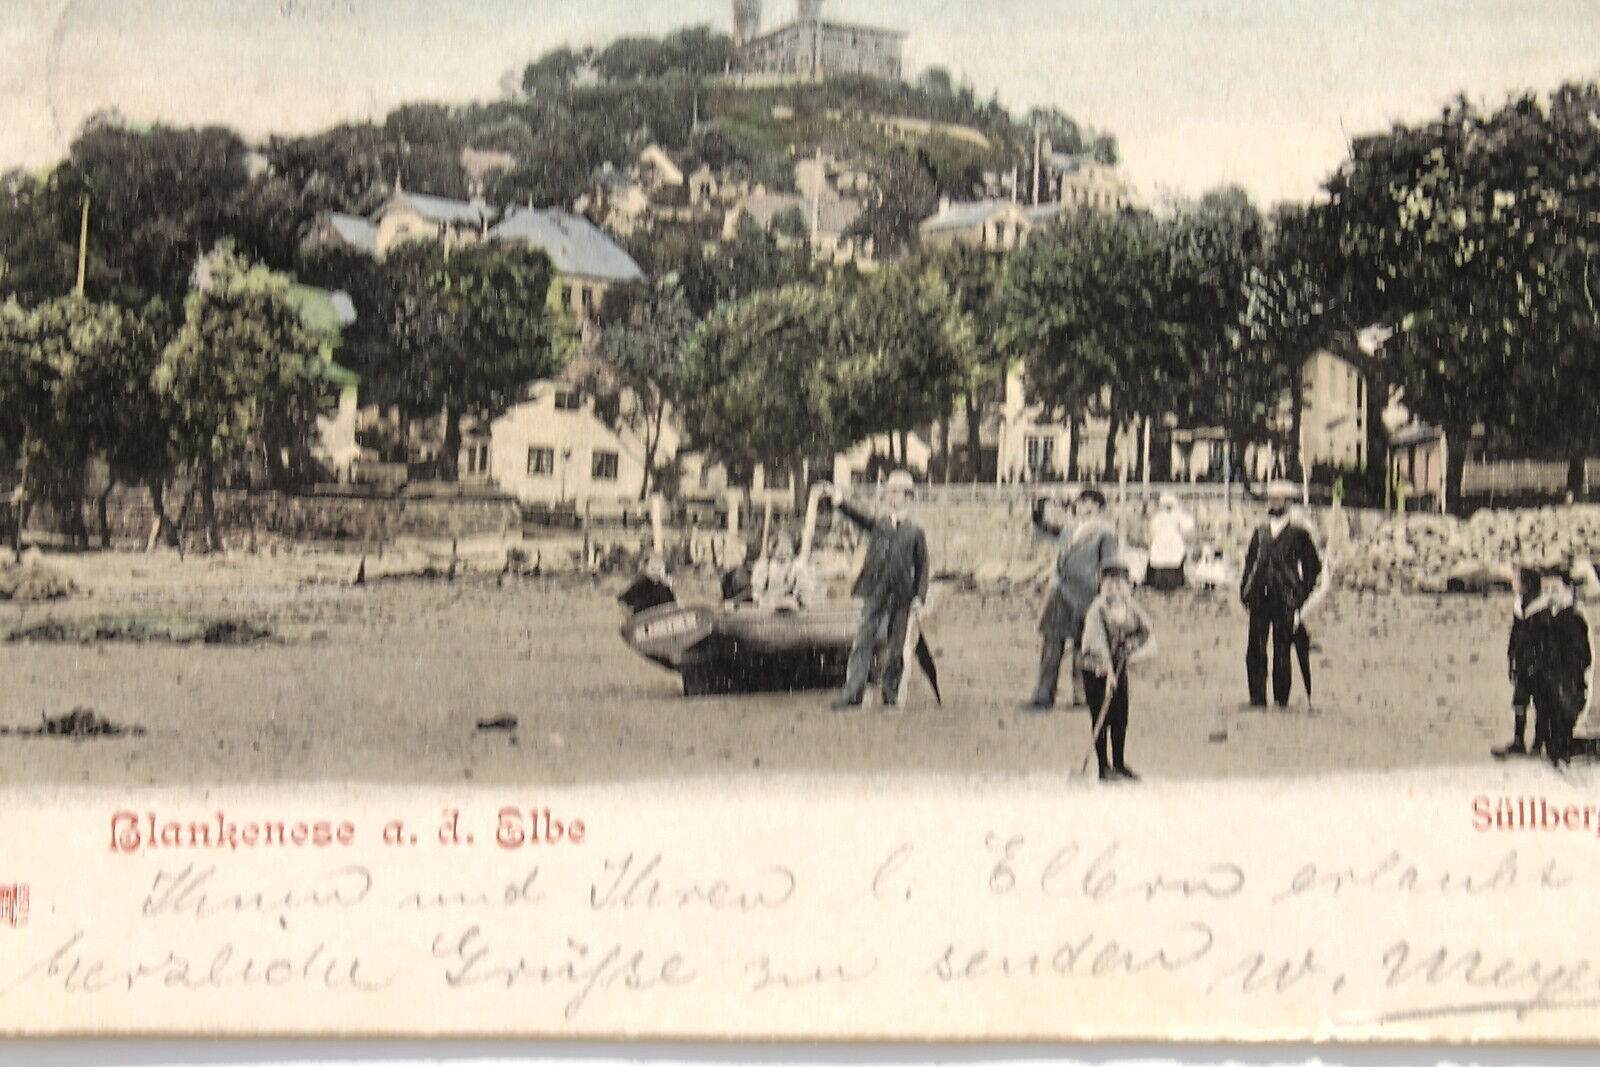 16777 Ak Blankenese on The Elbe Süllberg Ebbe Boat Children Walkers To 1910